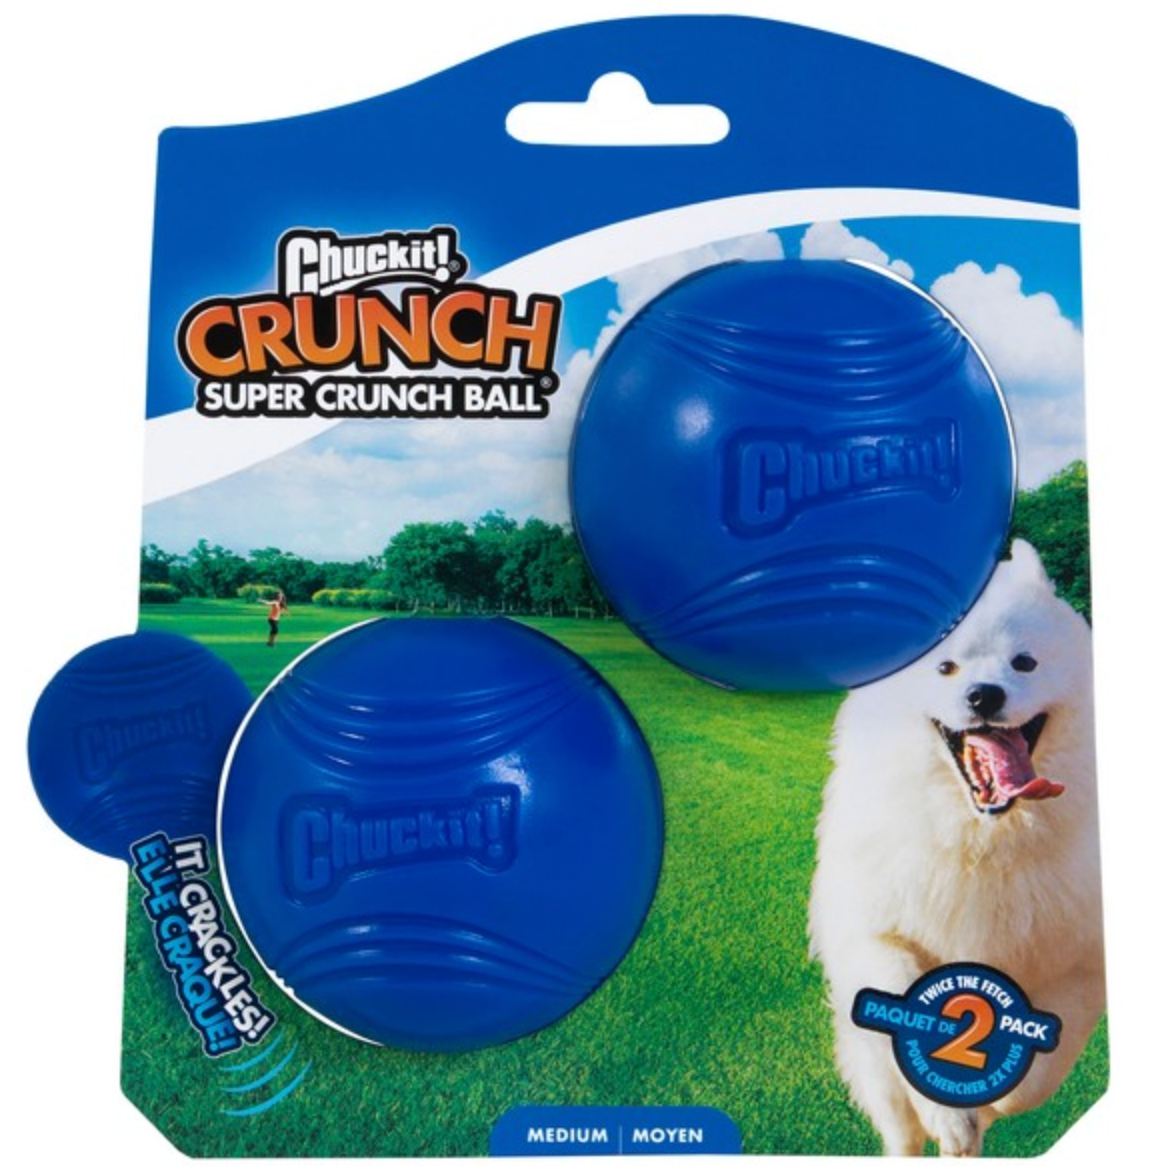 Chuckit! Super Crunch Ball (2 Pack)